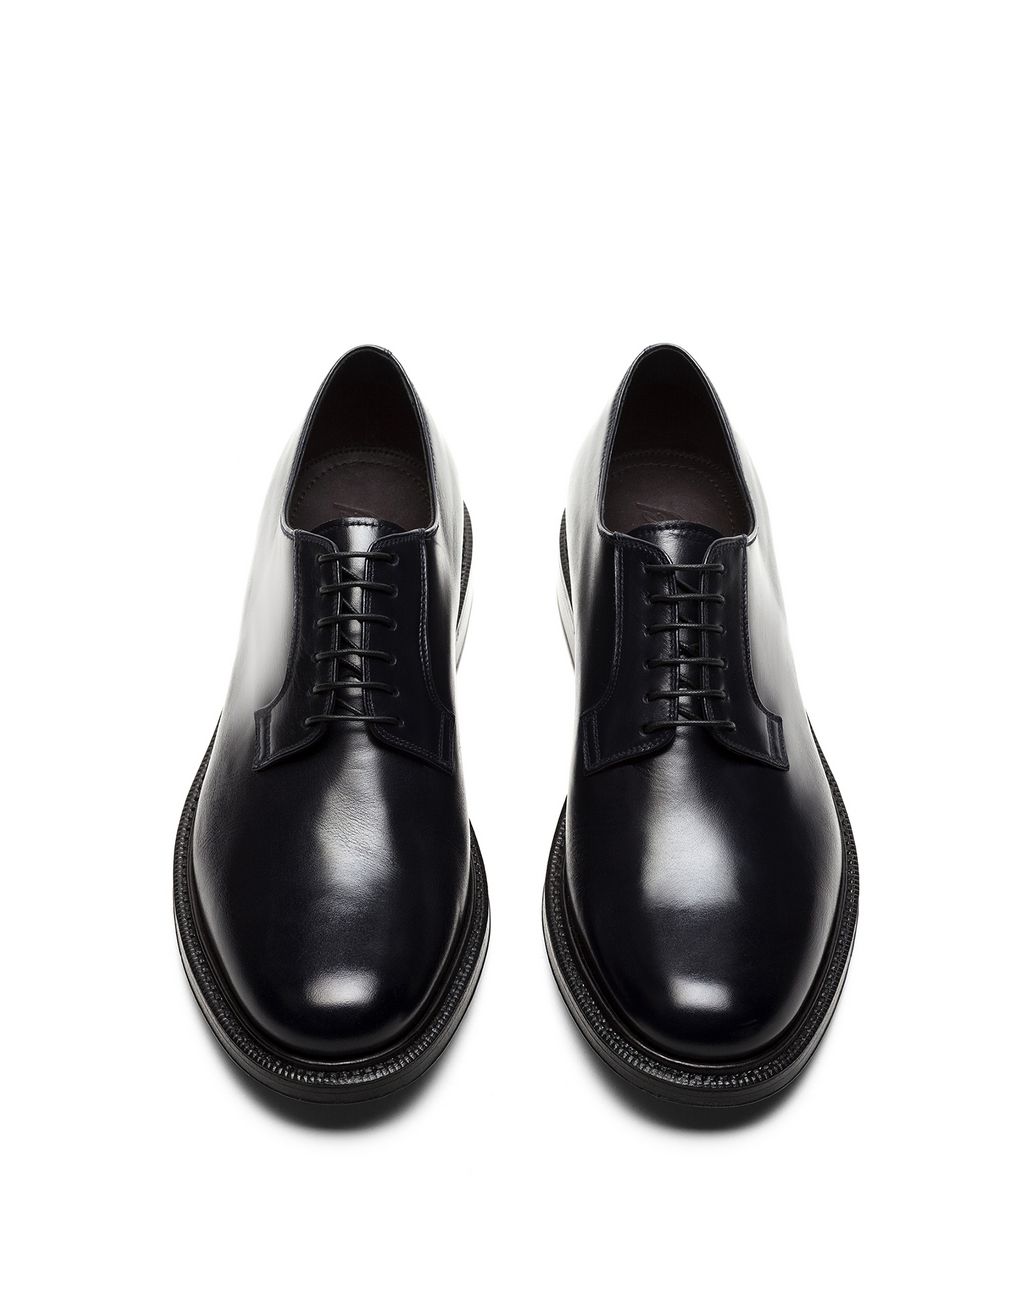 Brioni ‎Men‎'s ‎Formal Shoes‎ | Brioni Official Online Store